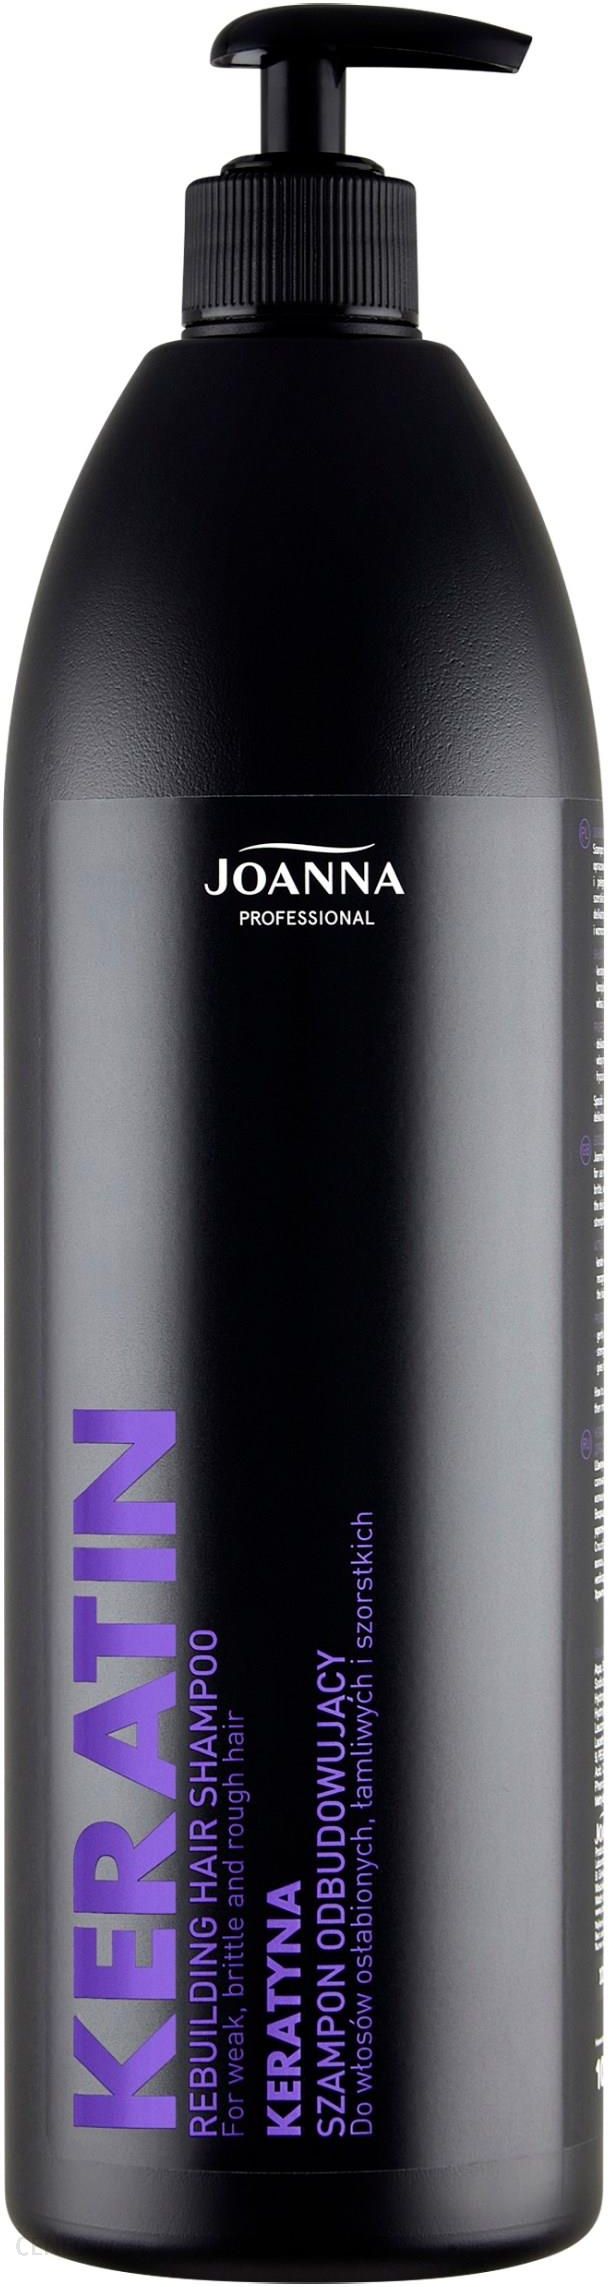 szampon joanna 1000ml